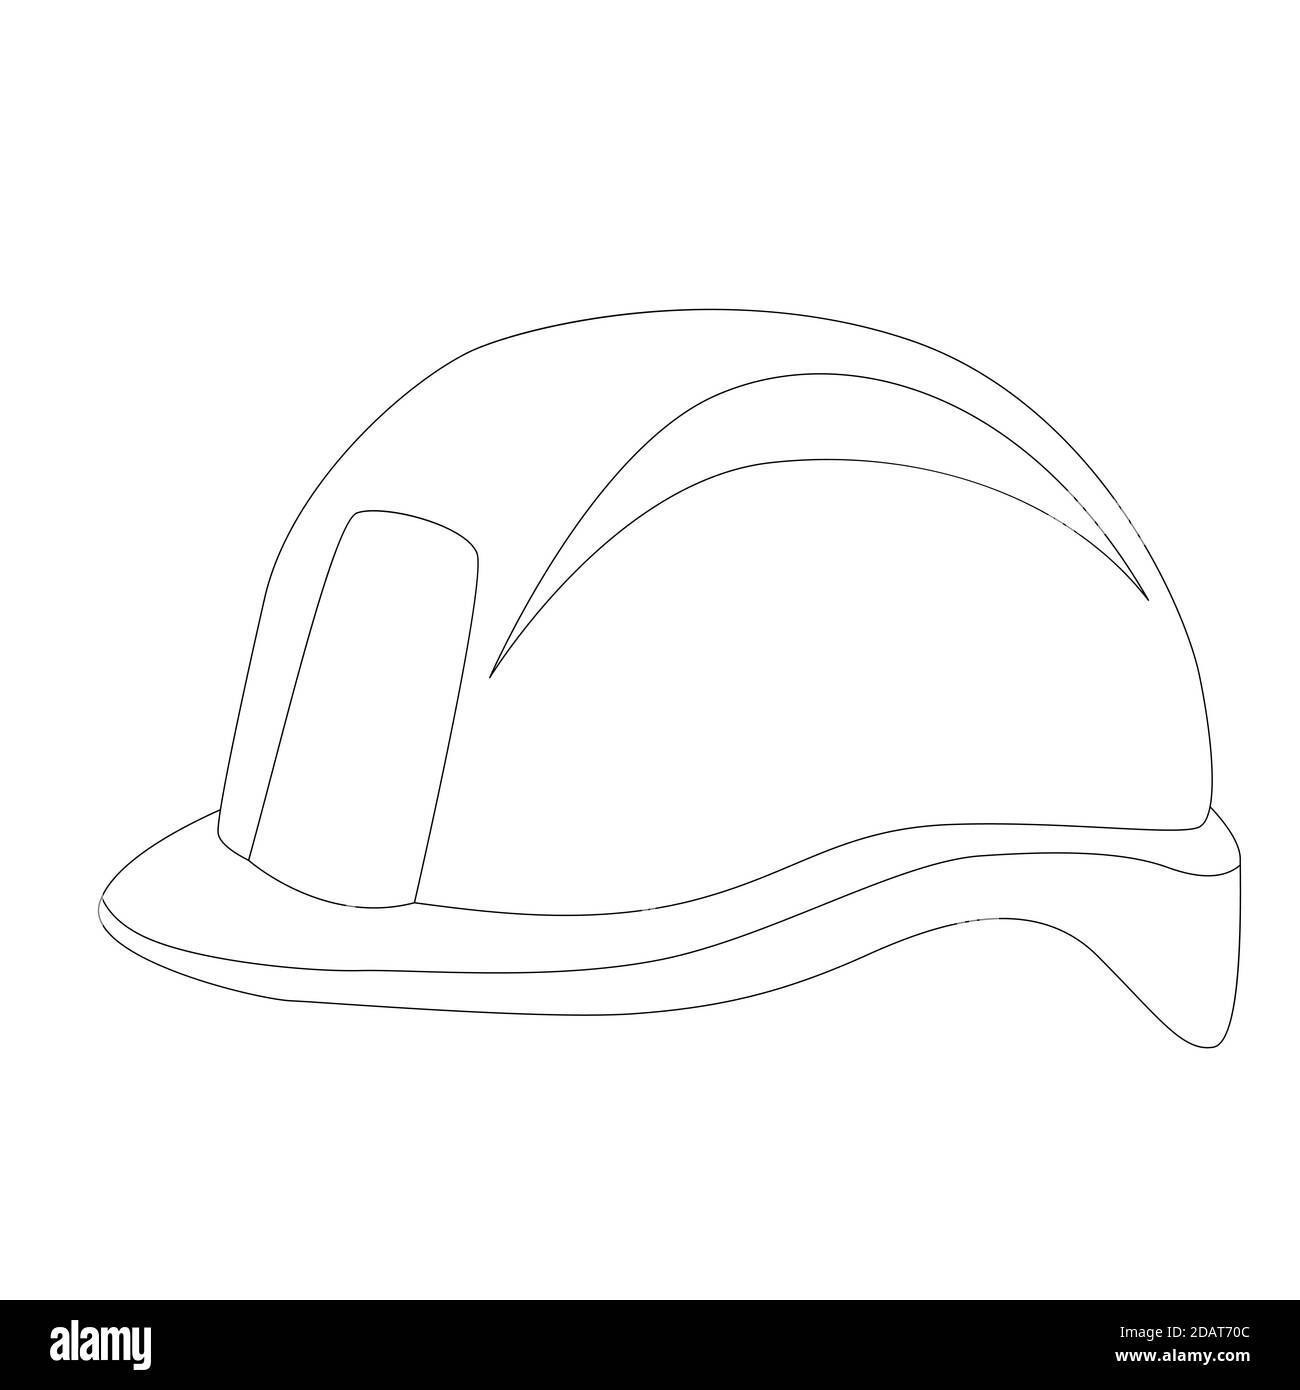 casque de protection, illustration vectorielle, dessin de doublure, côté  profilé Photo Stock - Alamy